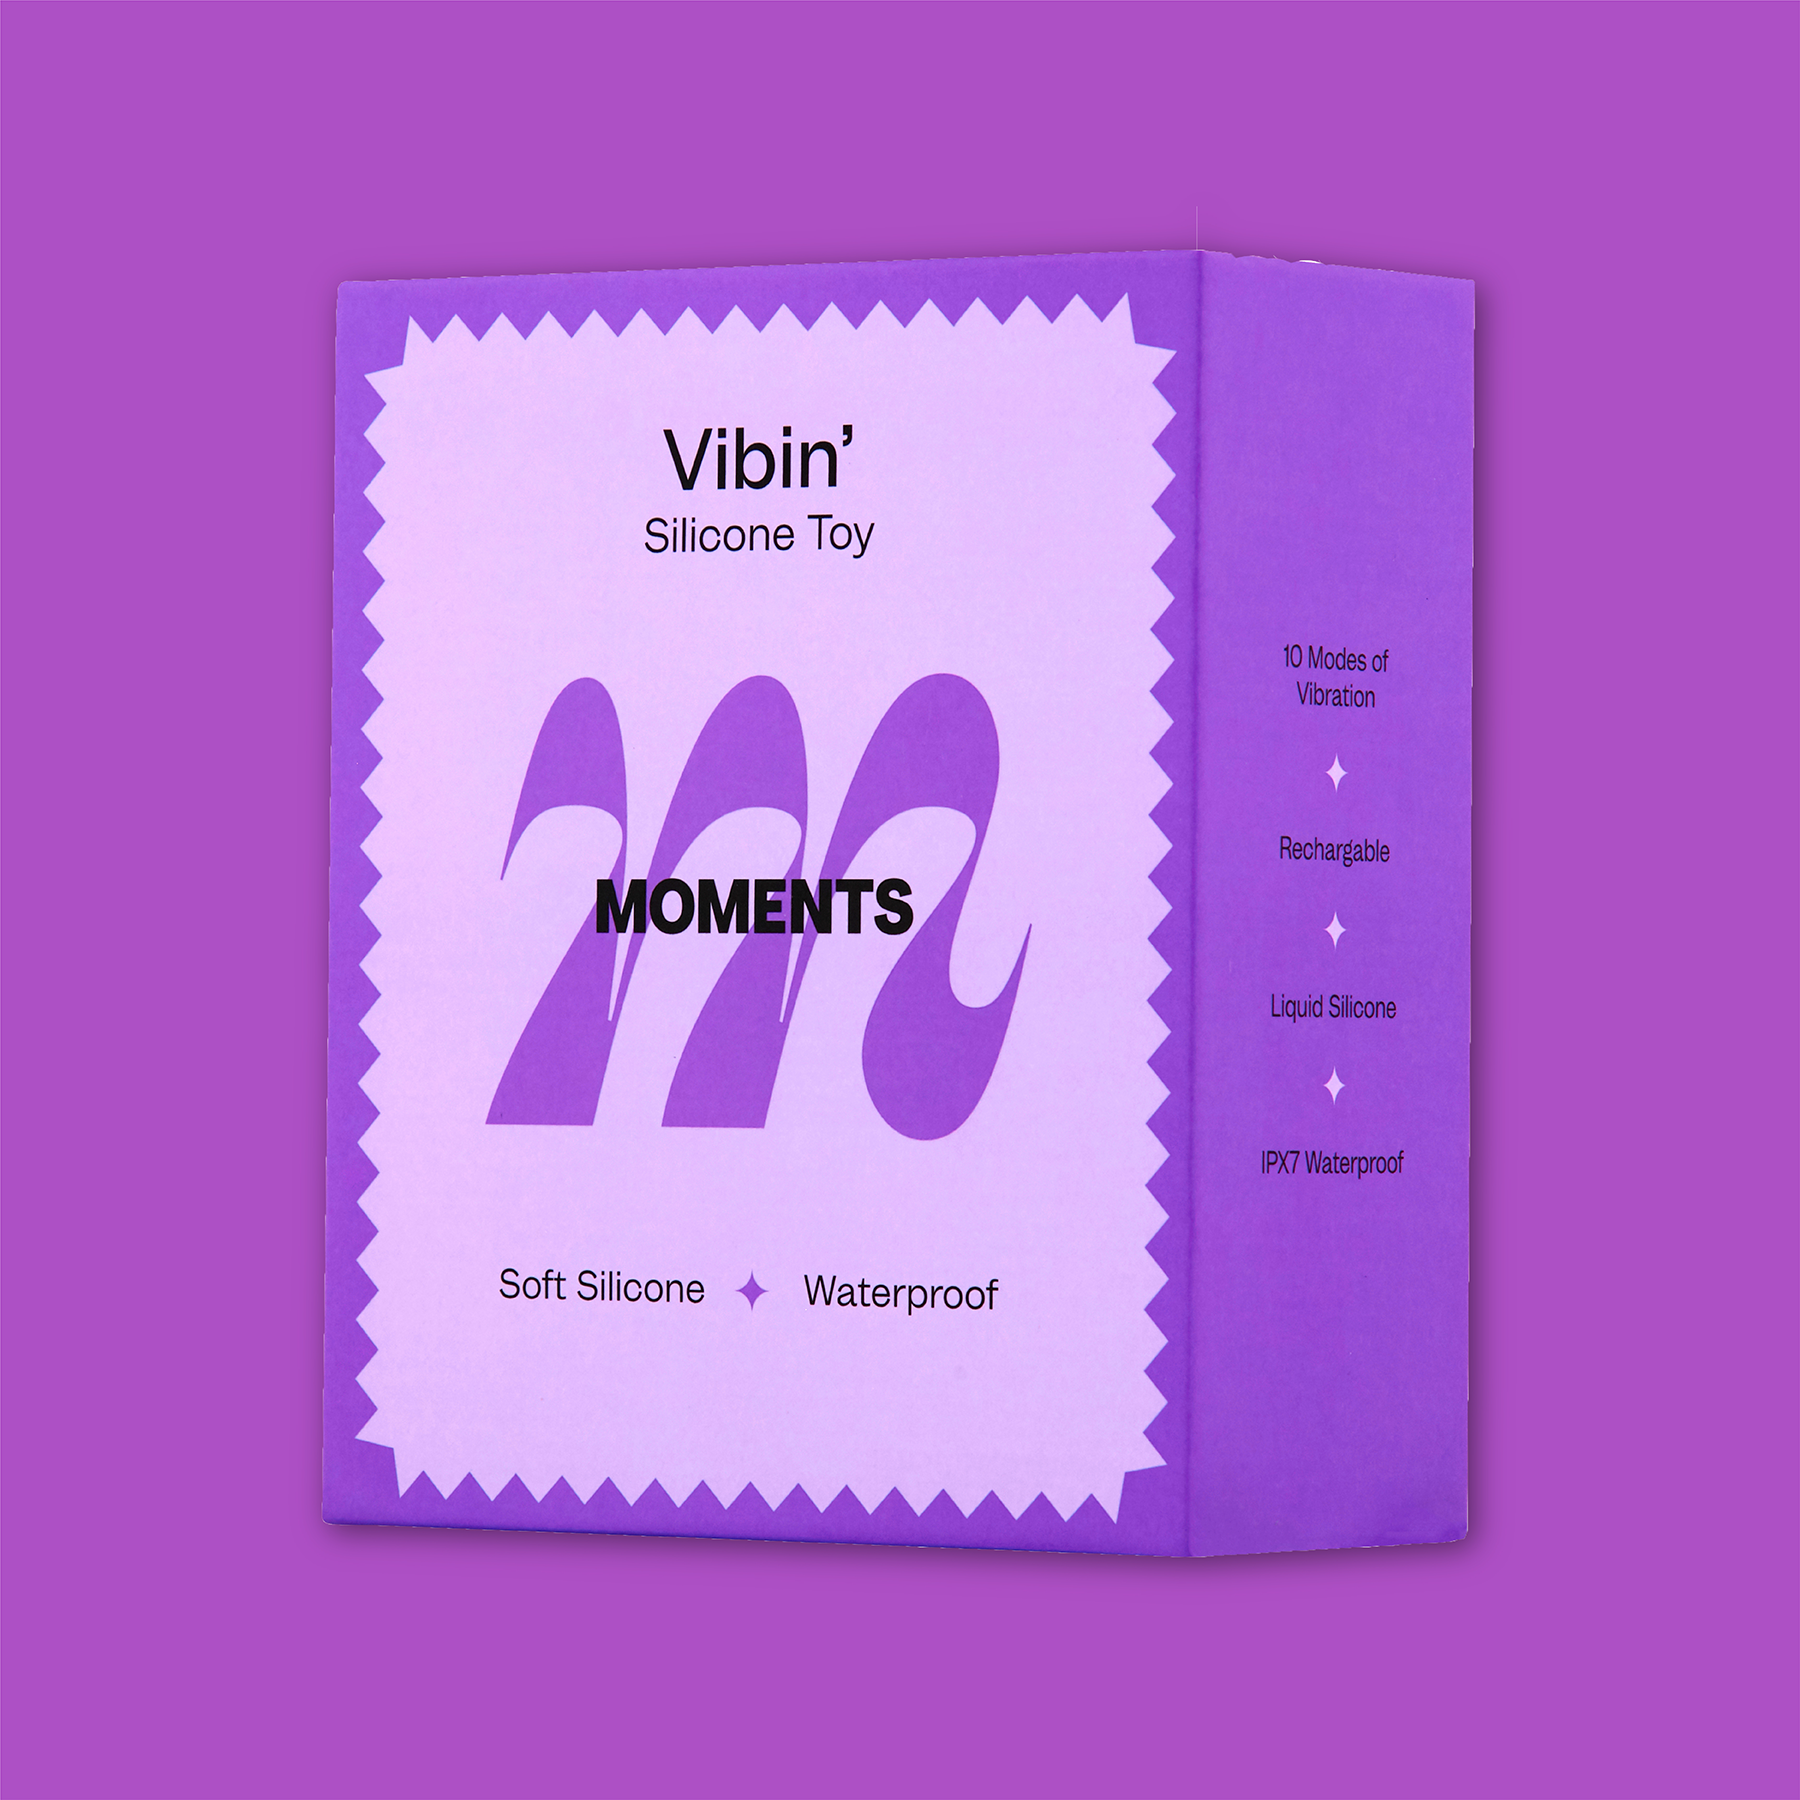 Vibin' product packaging in purple